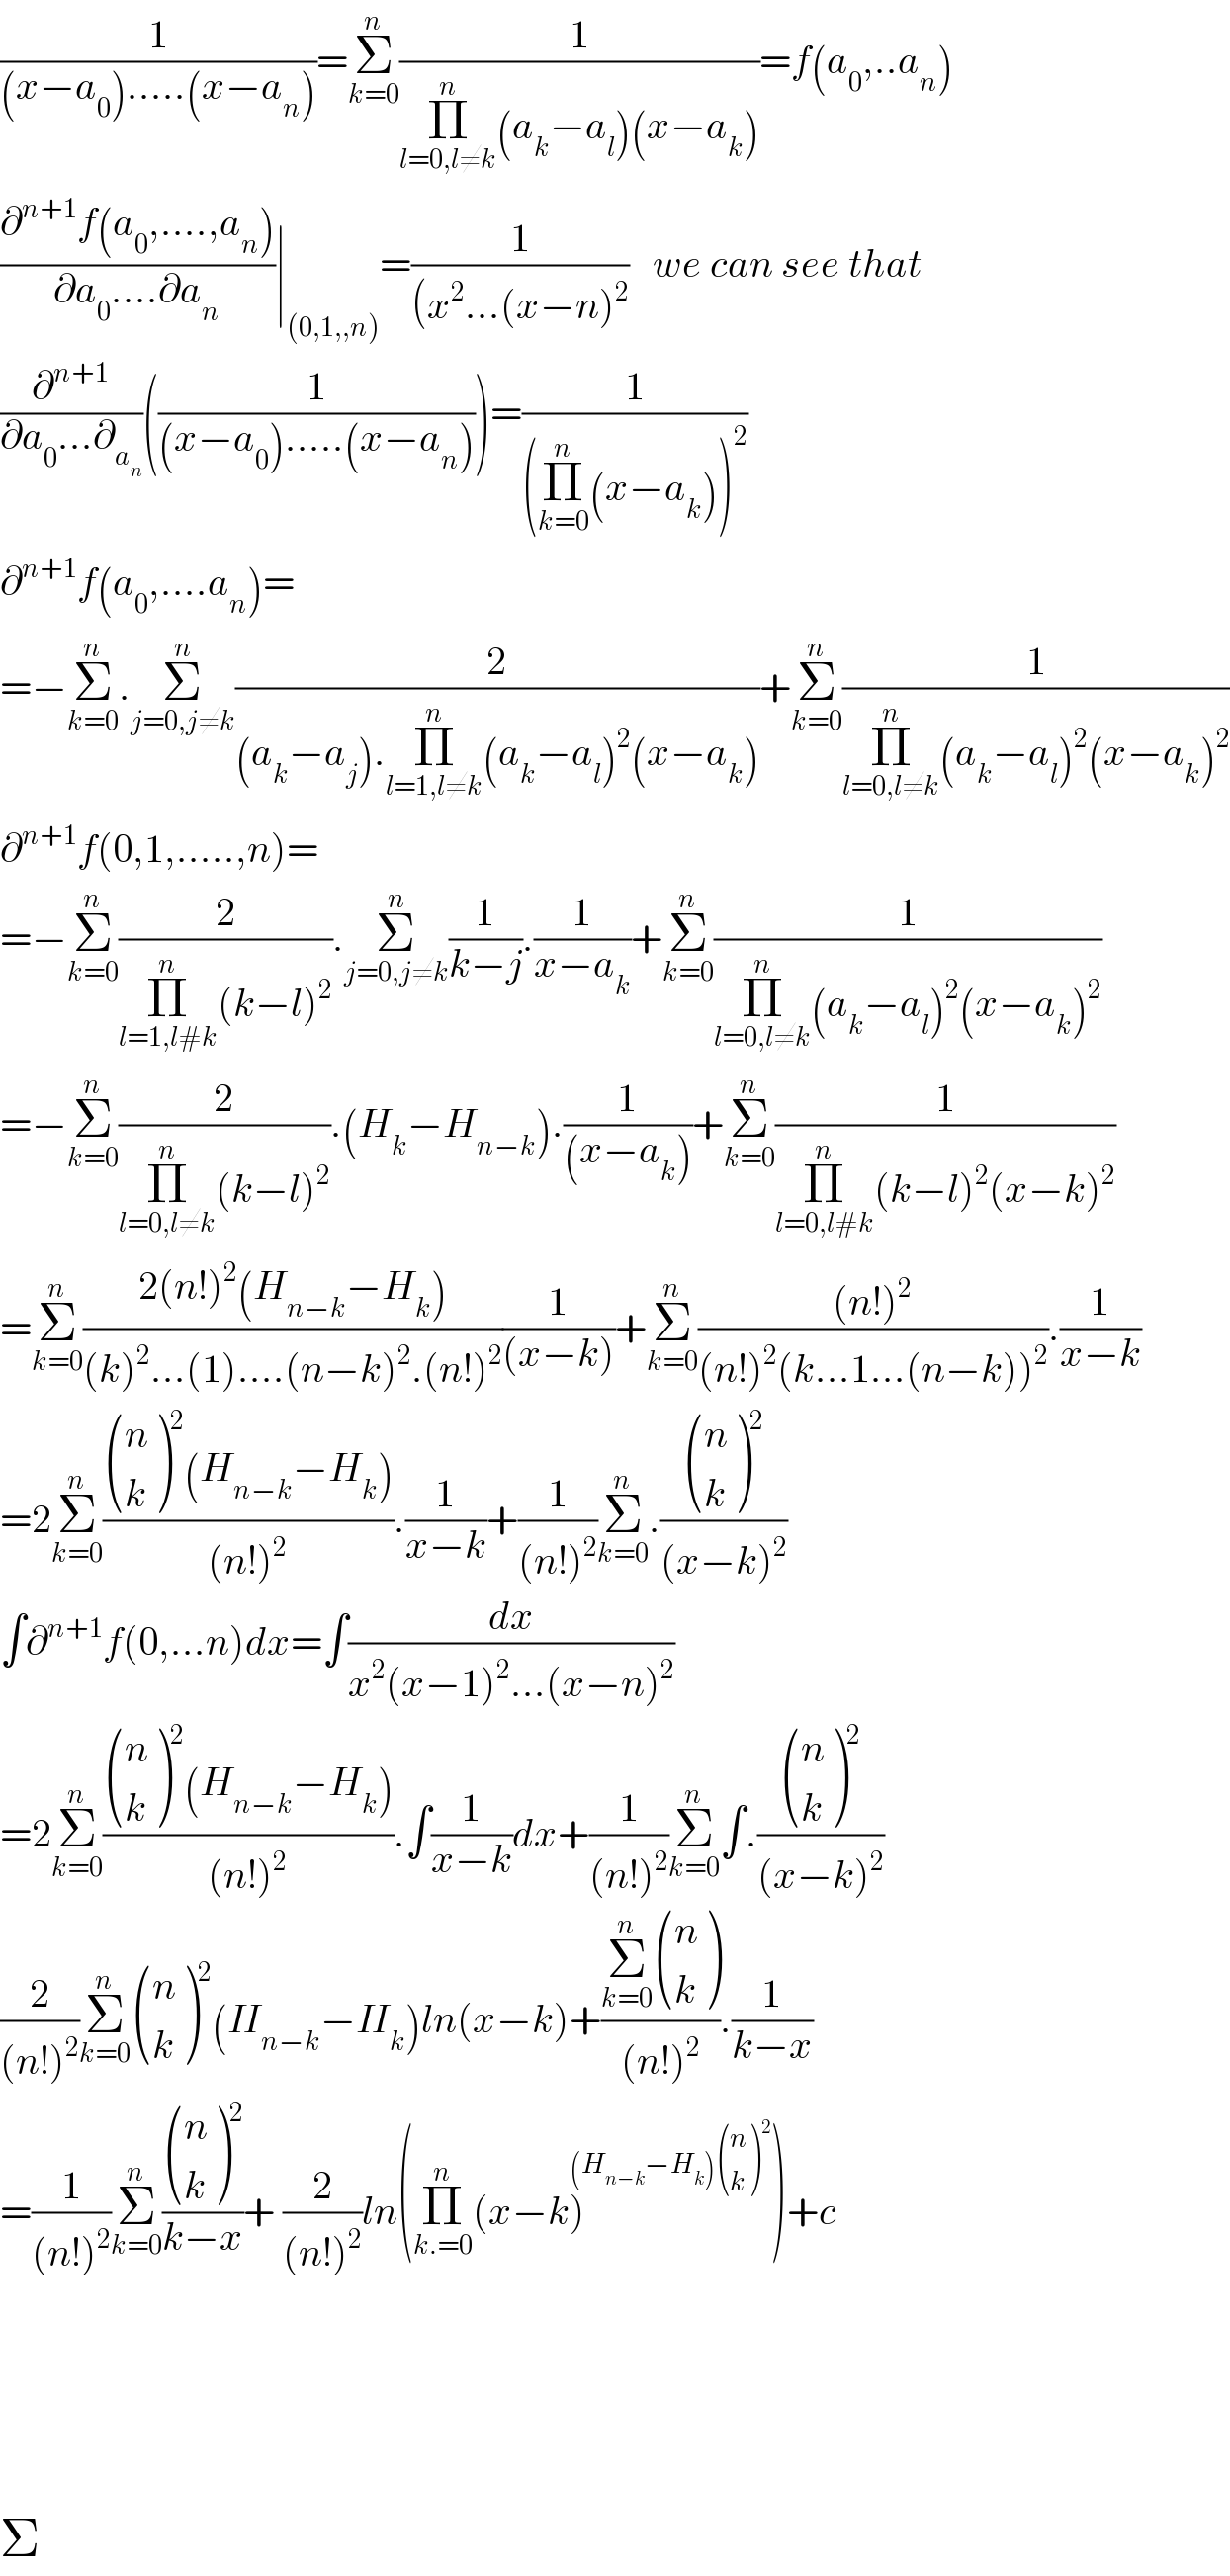 (1/((x−a_0 ).....(x−a_n )))=Σ_(k=0) ^n (1/(Π_(l=0,l≠k) ^n (a_k −a_l )(x−a_k )))=f(a_0 ,..a_n )  ((∂^(n+1) f(a_0 ,....,a_n ))/(∂a_0 ....∂a_n ))∣_((0,1,,n)) =(1/((x^2 ...(x−n)^2 ))   we can see that  (∂^(n+1) /(∂a_0 ...∂_a_n  ))((1/((x−a_0 ).....(x−a_n ))))=(1/((Π_(k=0) ^n (x−a_k ))^2 ))  ∂^(n+1) f(a_0 ,....a_n )=  =−Σ_(k=0) ^n .Σ_(j=0,j≠k) ^n (2/((a_k −a_j ).Π_(l=1,l≠k) ^n (a_k −a_l )^2 (x−a_k )))+Σ_(k=0) ^n (1/(Π_(l=0,l≠k) ^n (a_k −a_l )^2 (x−a_k )^2 ))  ∂^(n+1) f(0,1,.....,n)=  =−Σ_(k=0) ^n (2/(Π_(l=1,l#k) ^n (k−l)^2 )).Σ_(j=0,j≠k) ^n (1/(k−j)).(1/(x−a_k ))+Σ_(k=0) ^n (1/(Π_(l=0,l≠k) ^n (a_k −a_l )^2 (x−a_k )^2 ))  =−Σ_(k=0) ^n (2/(Π_(l=0,l≠k) ^n (k−l)^2 )).(H_k −H_(n−k) ).(1/((x−a_k )))+Σ_(k=0) ^n (1/(Π_(l=0,l#k) ^n (k−l)^2 (x−k)^2 ))  =Σ_(k=0) ^n ((2(n!)^2 (H_(n−k) −H_k ))/((k)^2 ...(1)....(n−k)^2 .(n!)^2 ))(1/((x−k)))+Σ_(k=0) ^n (((n!)^2 )/((n!)^2 (k...1...(n−k))^2 )).(1/(x−k))  =2Σ_(k=0) ^n (( ((n),(k) )^2 (H_(n−k) −H_k ))/((n!)^2 )).(1/(x−k))+(1/((n!)^2 ))Σ_(k=0) ^n .( ((n),(k) )^2 /((x−k)^2 ))  ∫∂^(n+1) f(0,...n)dx=∫(dx/(x^2 (x−1)^2 ...(x−n)^2 ))  =2Σ_(k=0) ^n (( ((n),(k) )^2 (H_(n−k) −H_k ))/((n!)^2 )).∫(1/(x−k))dx+(1/((n!)^2 ))Σ_(k=0) ^n ∫.( ((n),(k) )^2 /((x−k)^2 ))  (2/((n!)^2 ))Σ_(k=0) ^n  ((n),(k) )^2 (H_(n−k) −H_k )ln(x−k)+((Σ_(k=0) ^n  ((n),(k) ))/((n!)^2 )).(1/(k−x))  =(1/((n!)^2 ))Σ_(k=0) ^n ( ((n),(k) )^2 /(k−x))+ (2/((n!)^2 ))ln(Π_(k.=0) ^n (x−k)^((H_(n−k) −H_k ) ((n),(k) )^2 ) )+c          Σ  